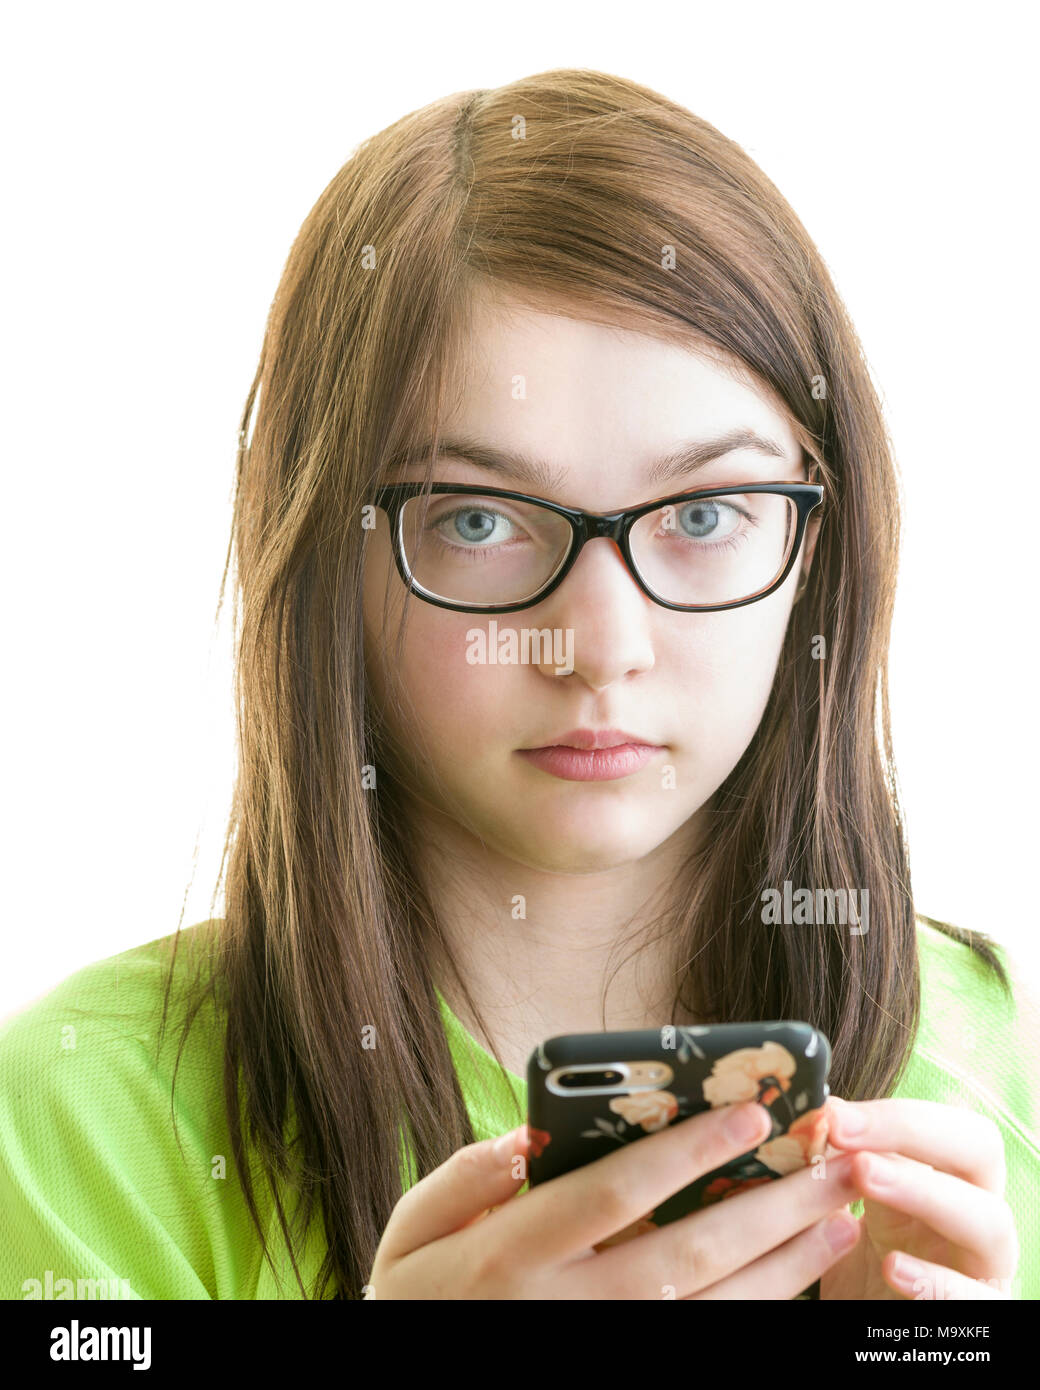 Nahaufnahme, Porträt einer Brünette Junge kaukasier Jugendmädchen Sie Ihr Smartphone auf einem weißen Hintergrund Model Release: Ja. Property Release: Nein. Stockfoto